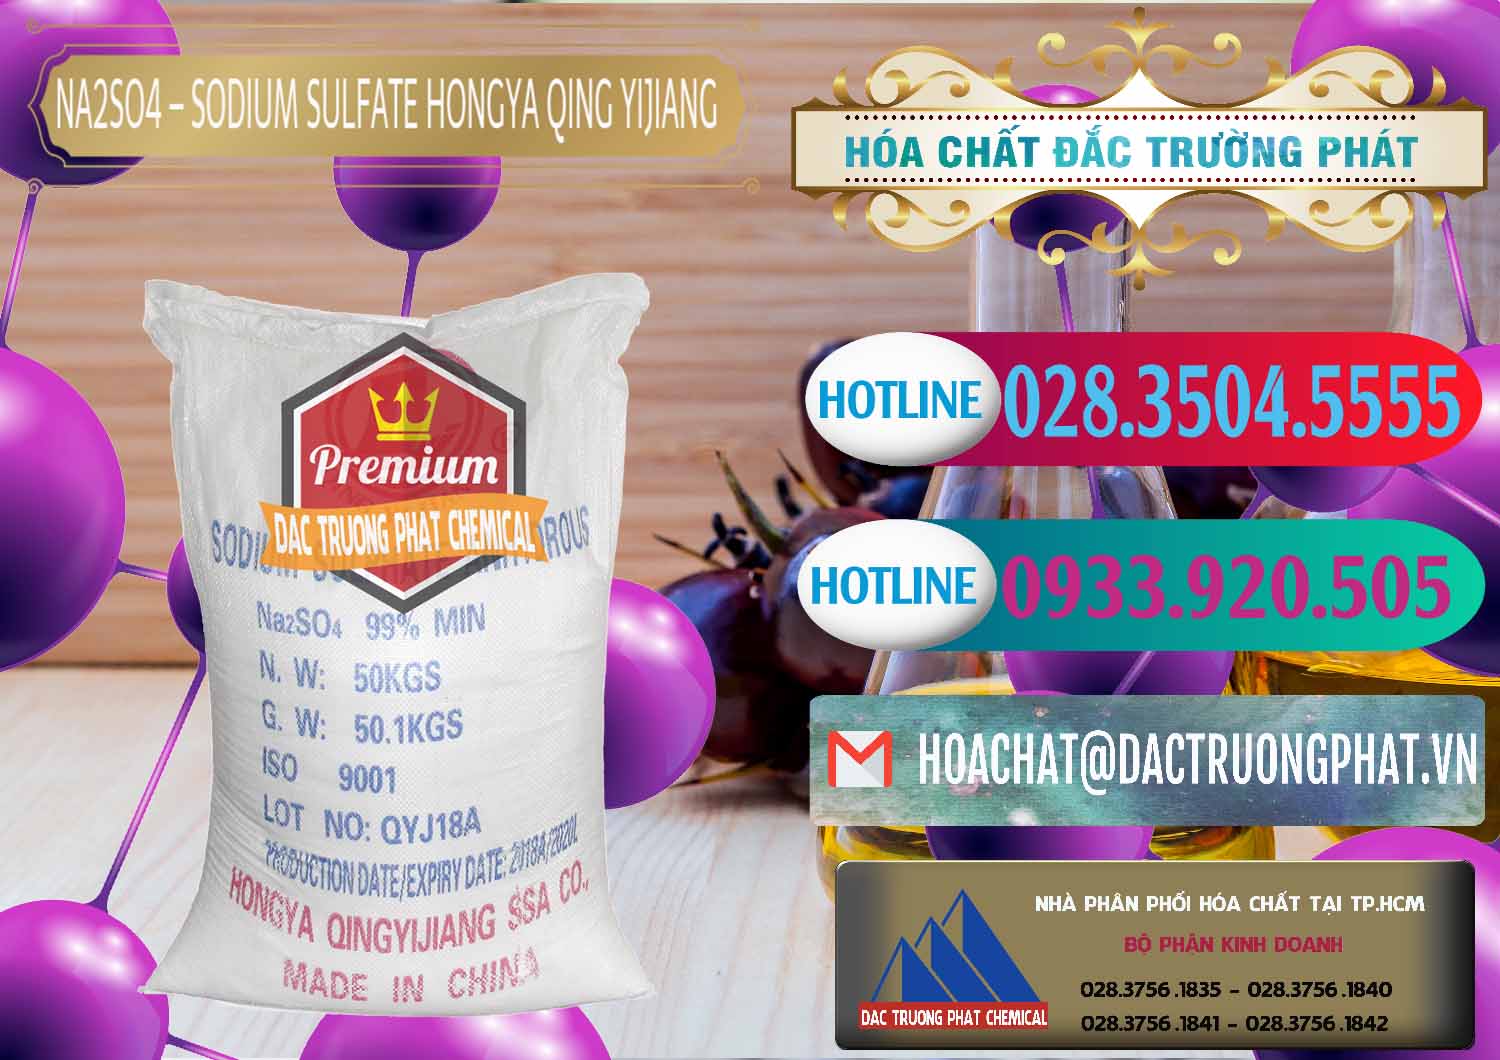 Nơi chuyên bán và cung cấp Sodium Sulphate - Muối Sunfat Na2SO4 Logo Cánh Bườm Hongya Qing Yi Trung Quốc China - 0098 - Đơn vị cung cấp & phân phối hóa chất tại TP.HCM - truongphat.vn